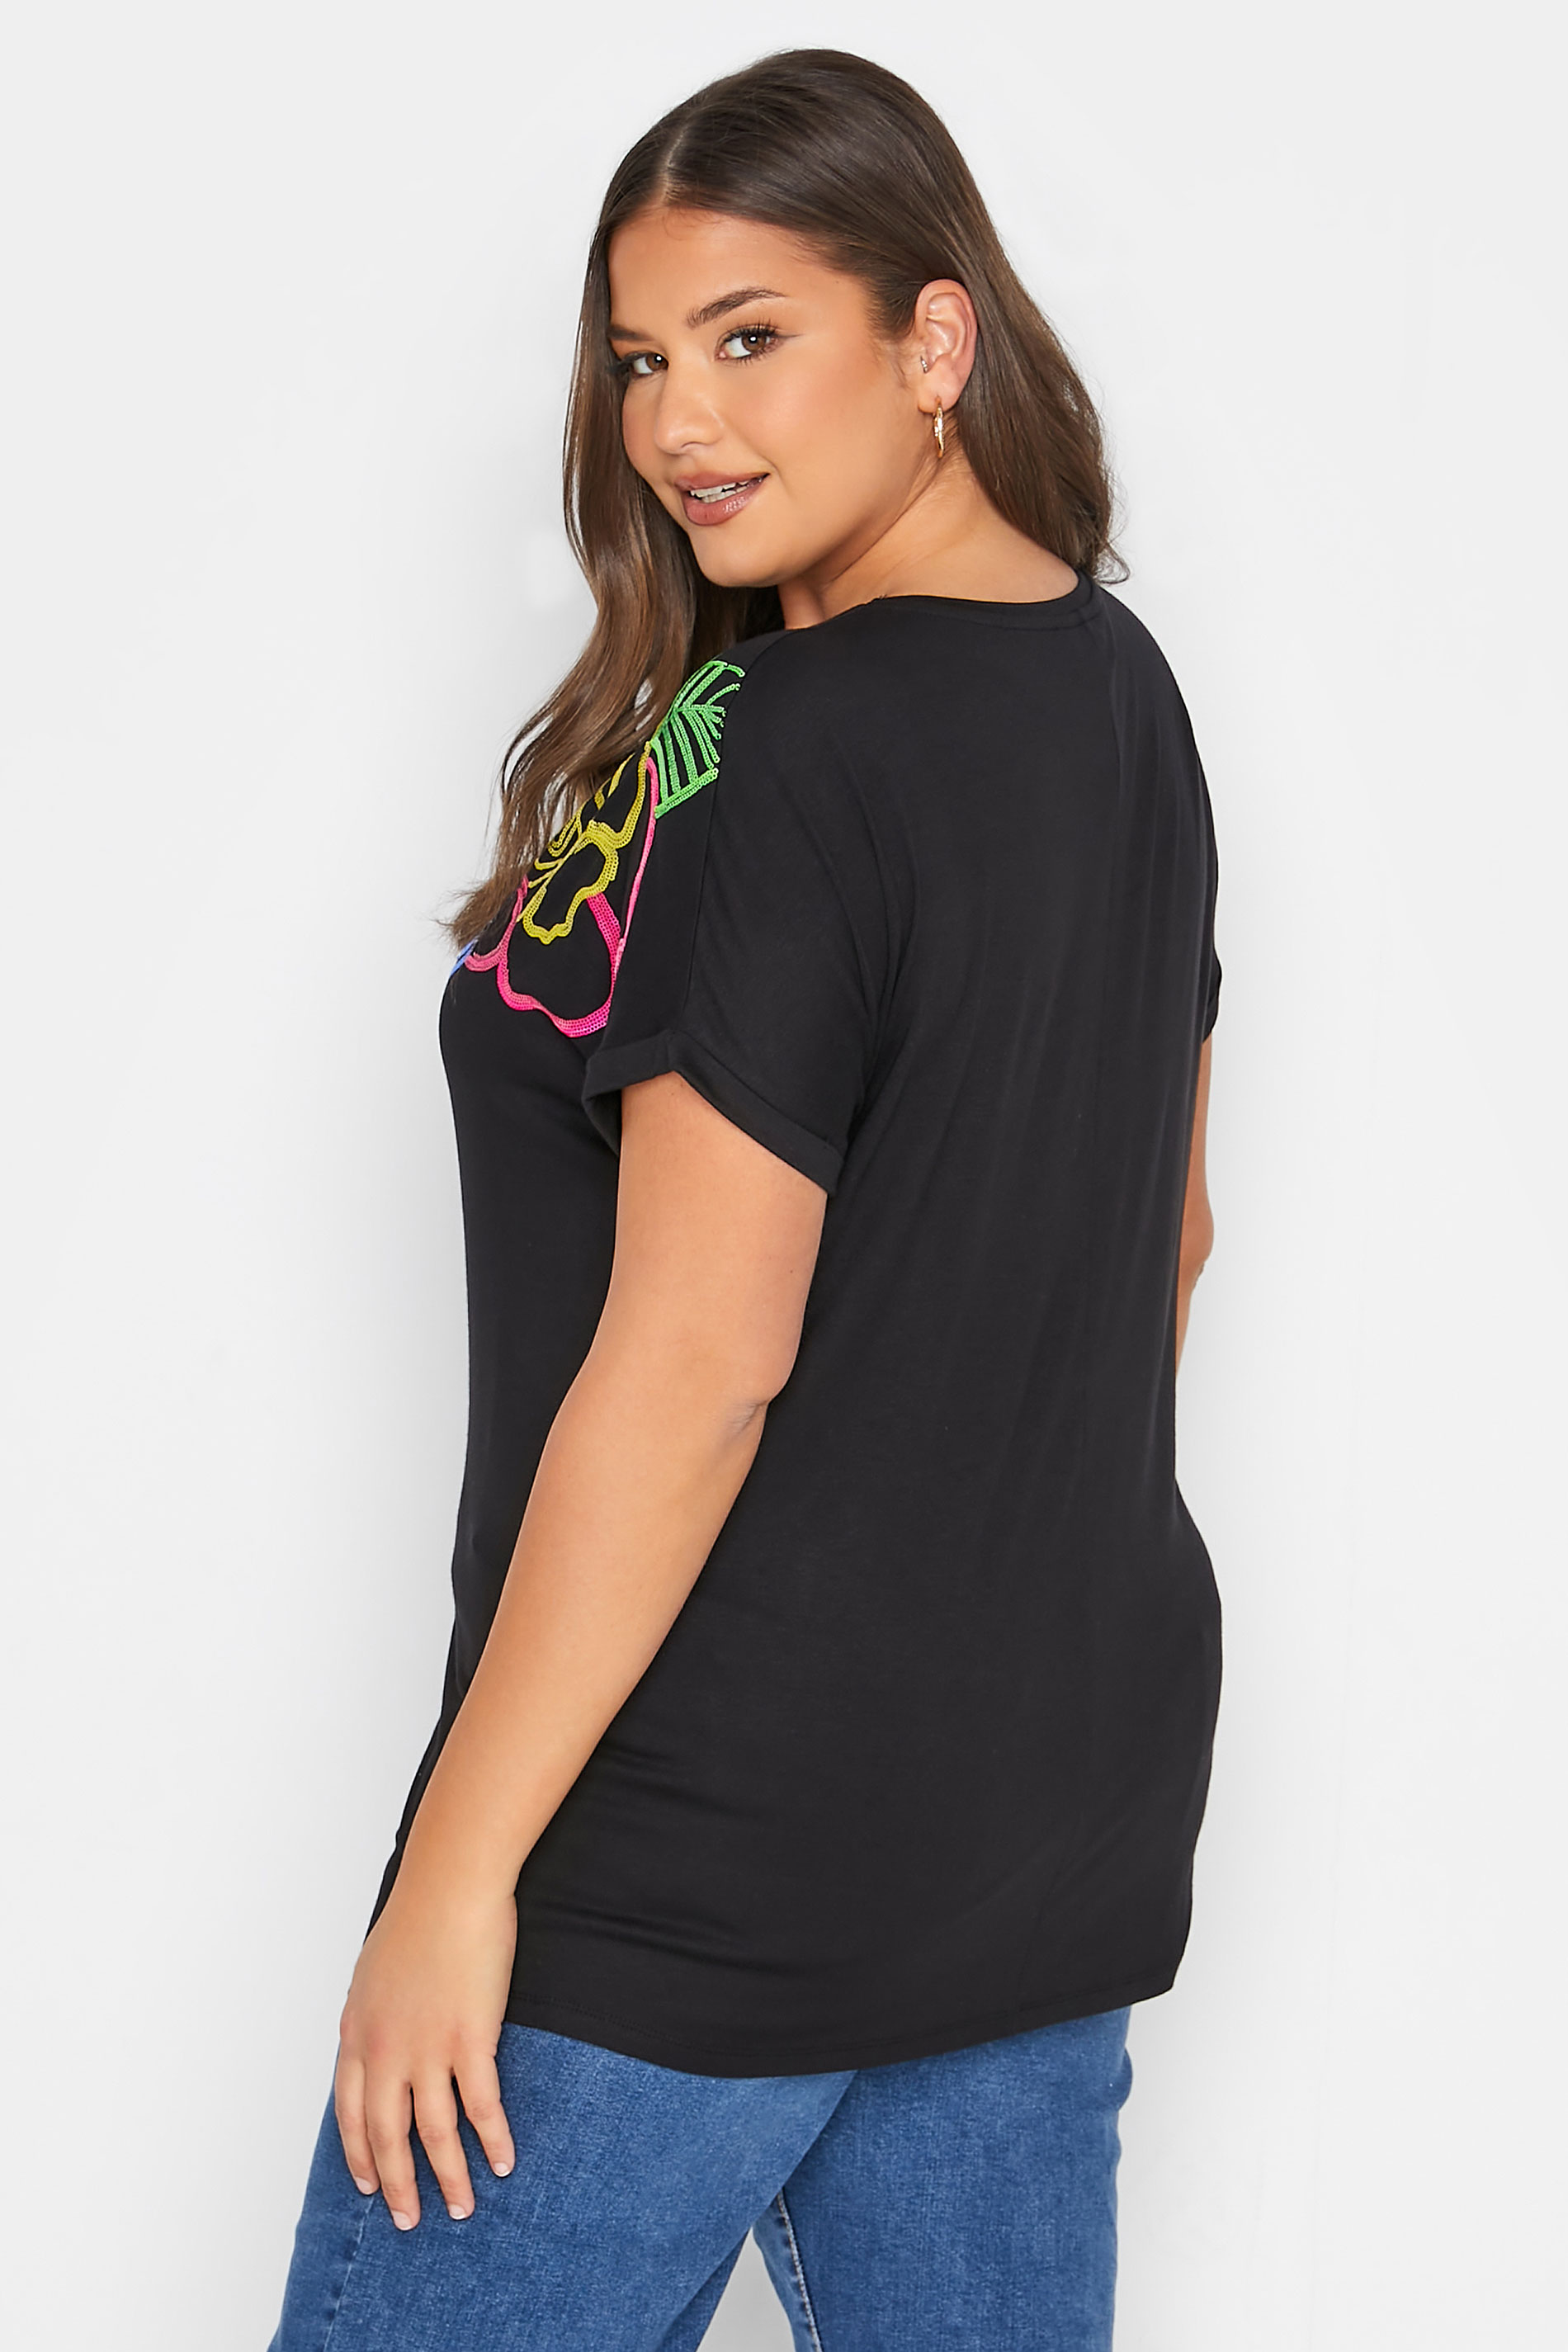 Grande taille  Tops Grande taille  T-Shirts | T-Shirt Noir Floral Empiècement Sequins - DF31354